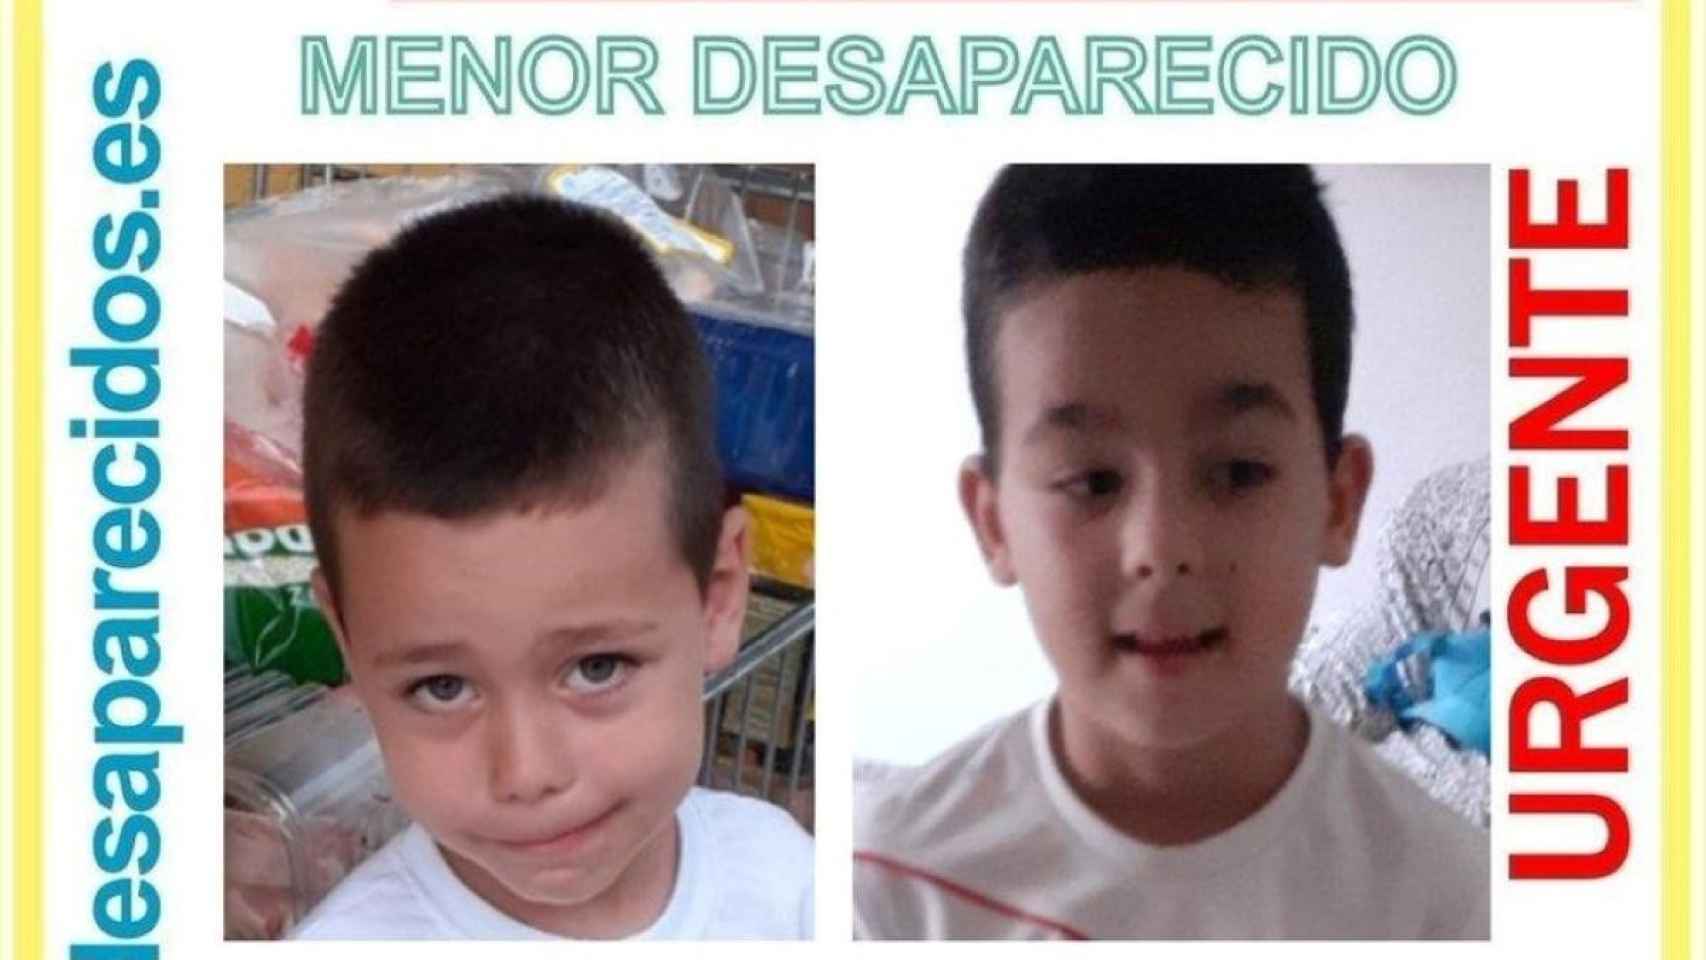 Florín Alexandru Cojocaru y Mario Nicolás Cojocaru, dos niños desaparecidos desde hace una semana / TWITTER